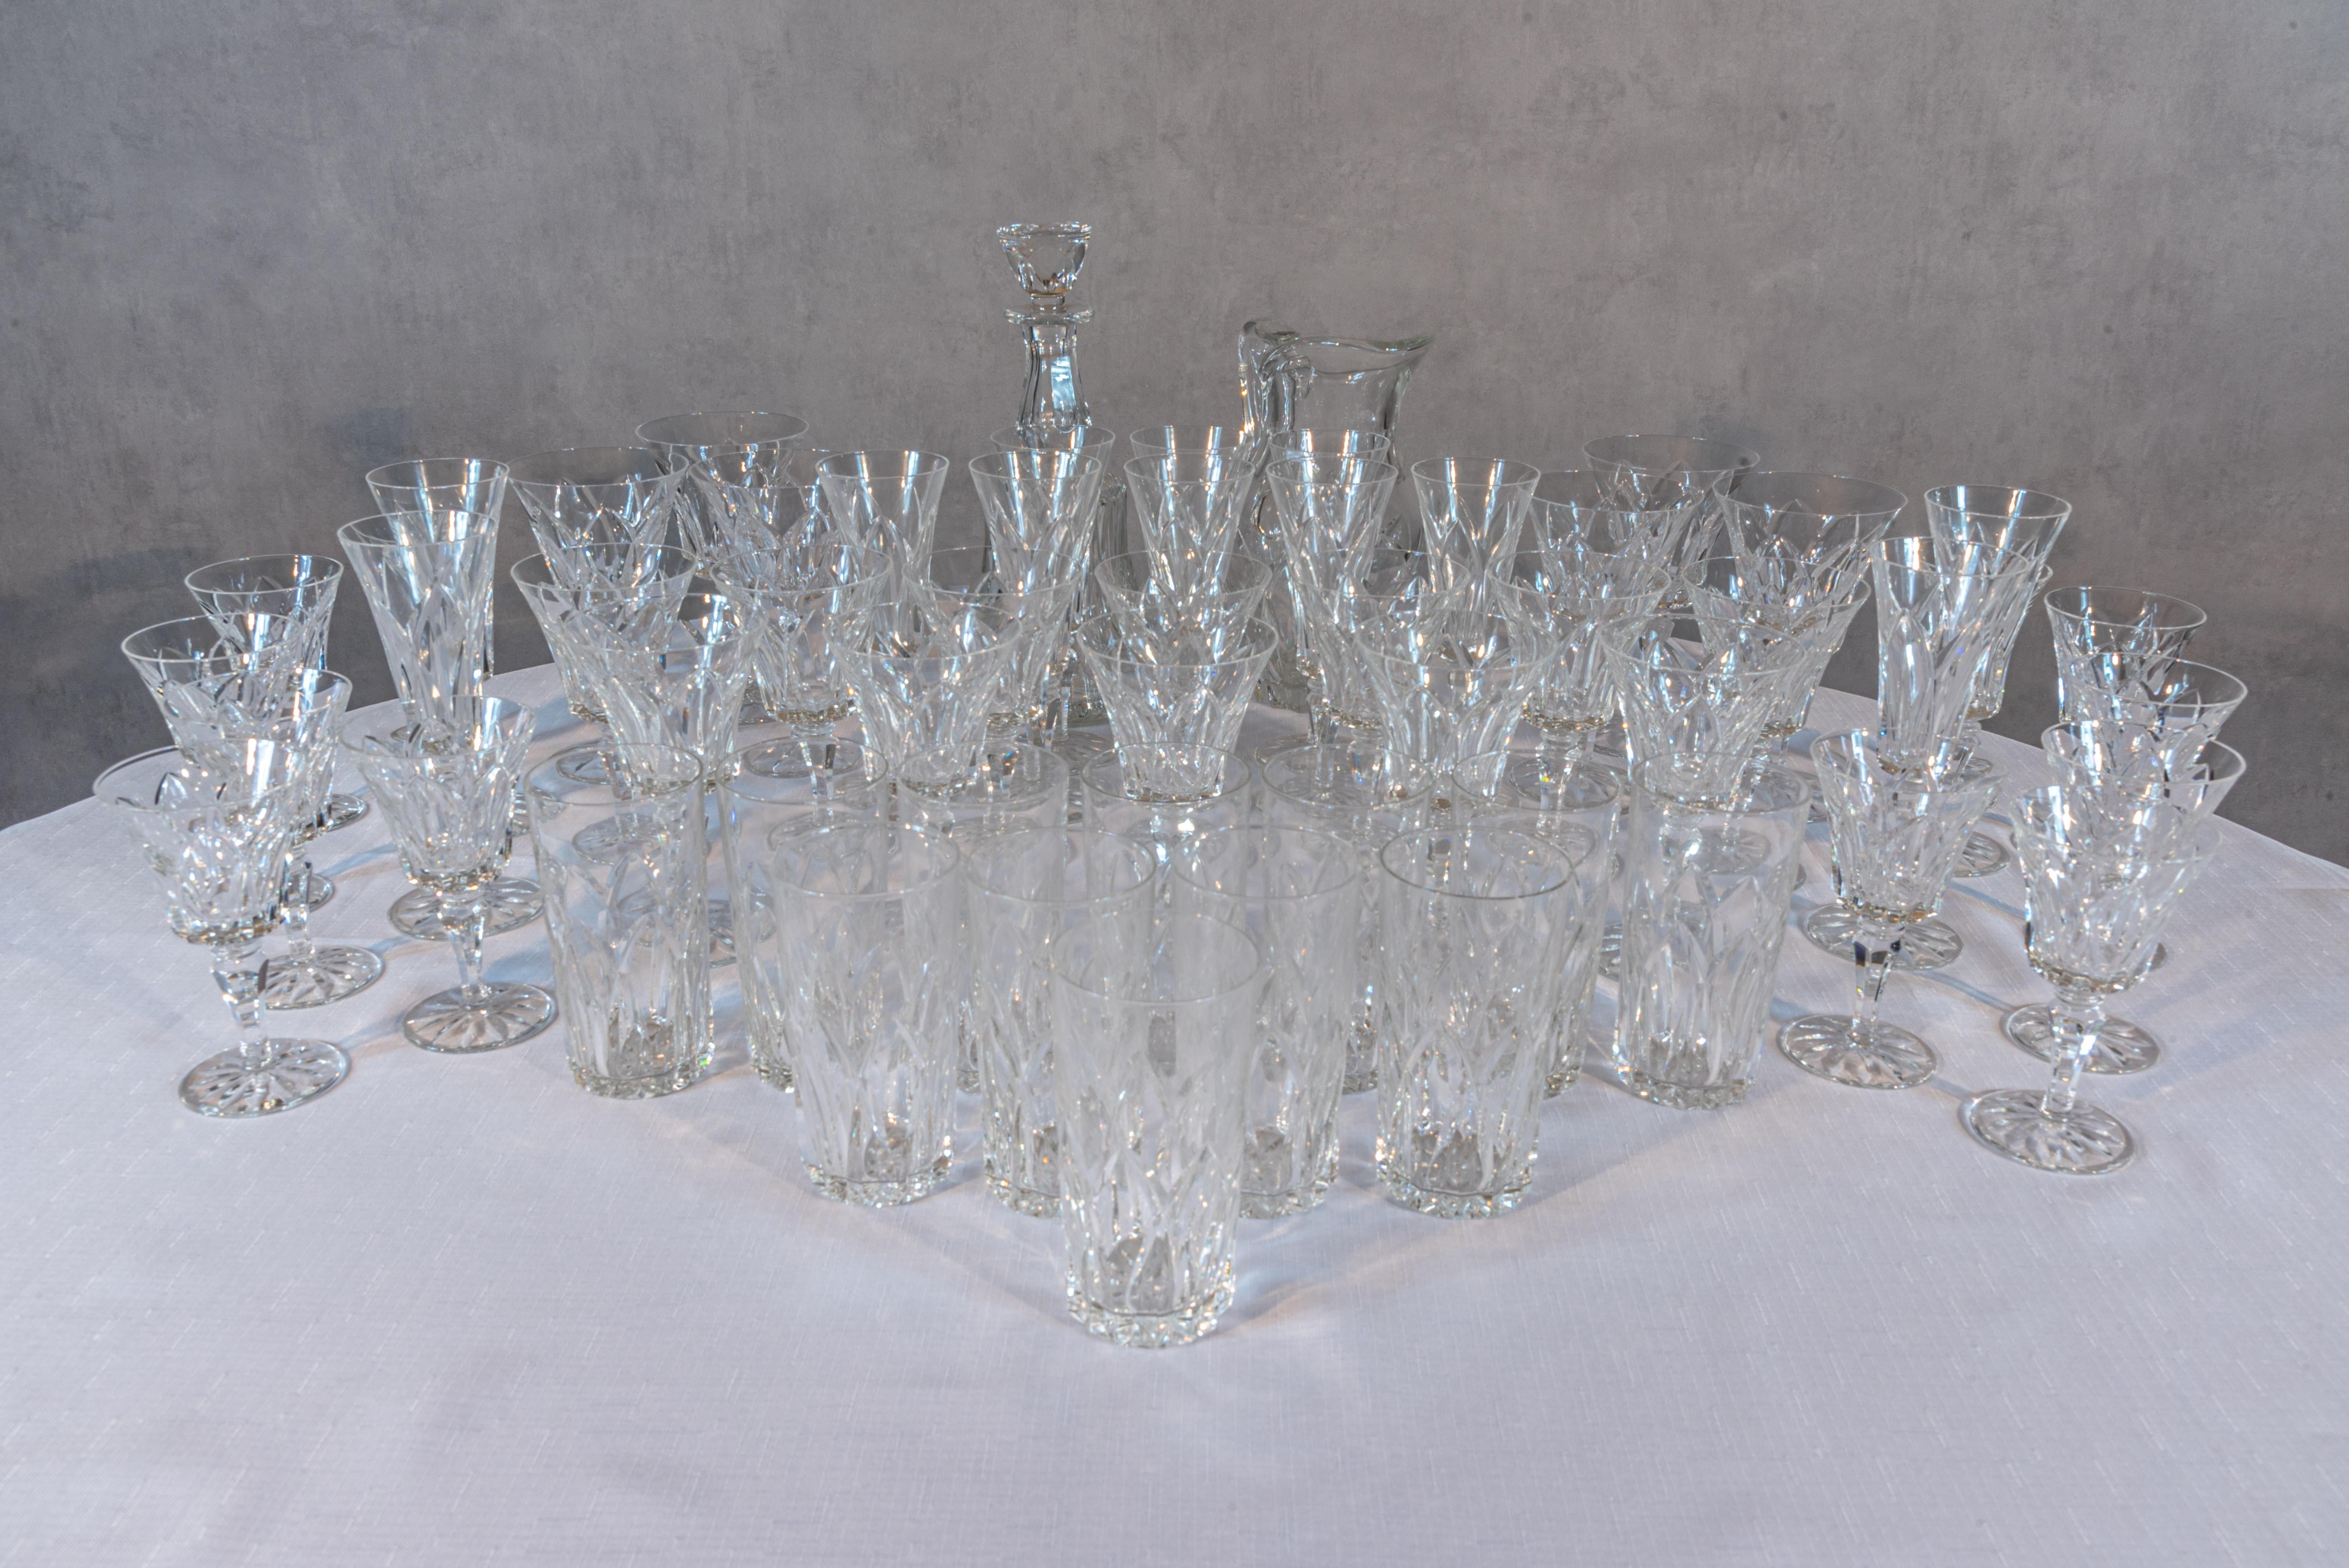 Ce set de 55 Saint Louis Crystal est un ensemble luxueux qui incarne le raffinement et l'élégance. Chaque pièce témoigne de l'exceptionnel savoir-faire et de l'art de Saint Louis Crystal. L'ensemble comprend une carafe à décanter, une carafe à eau,